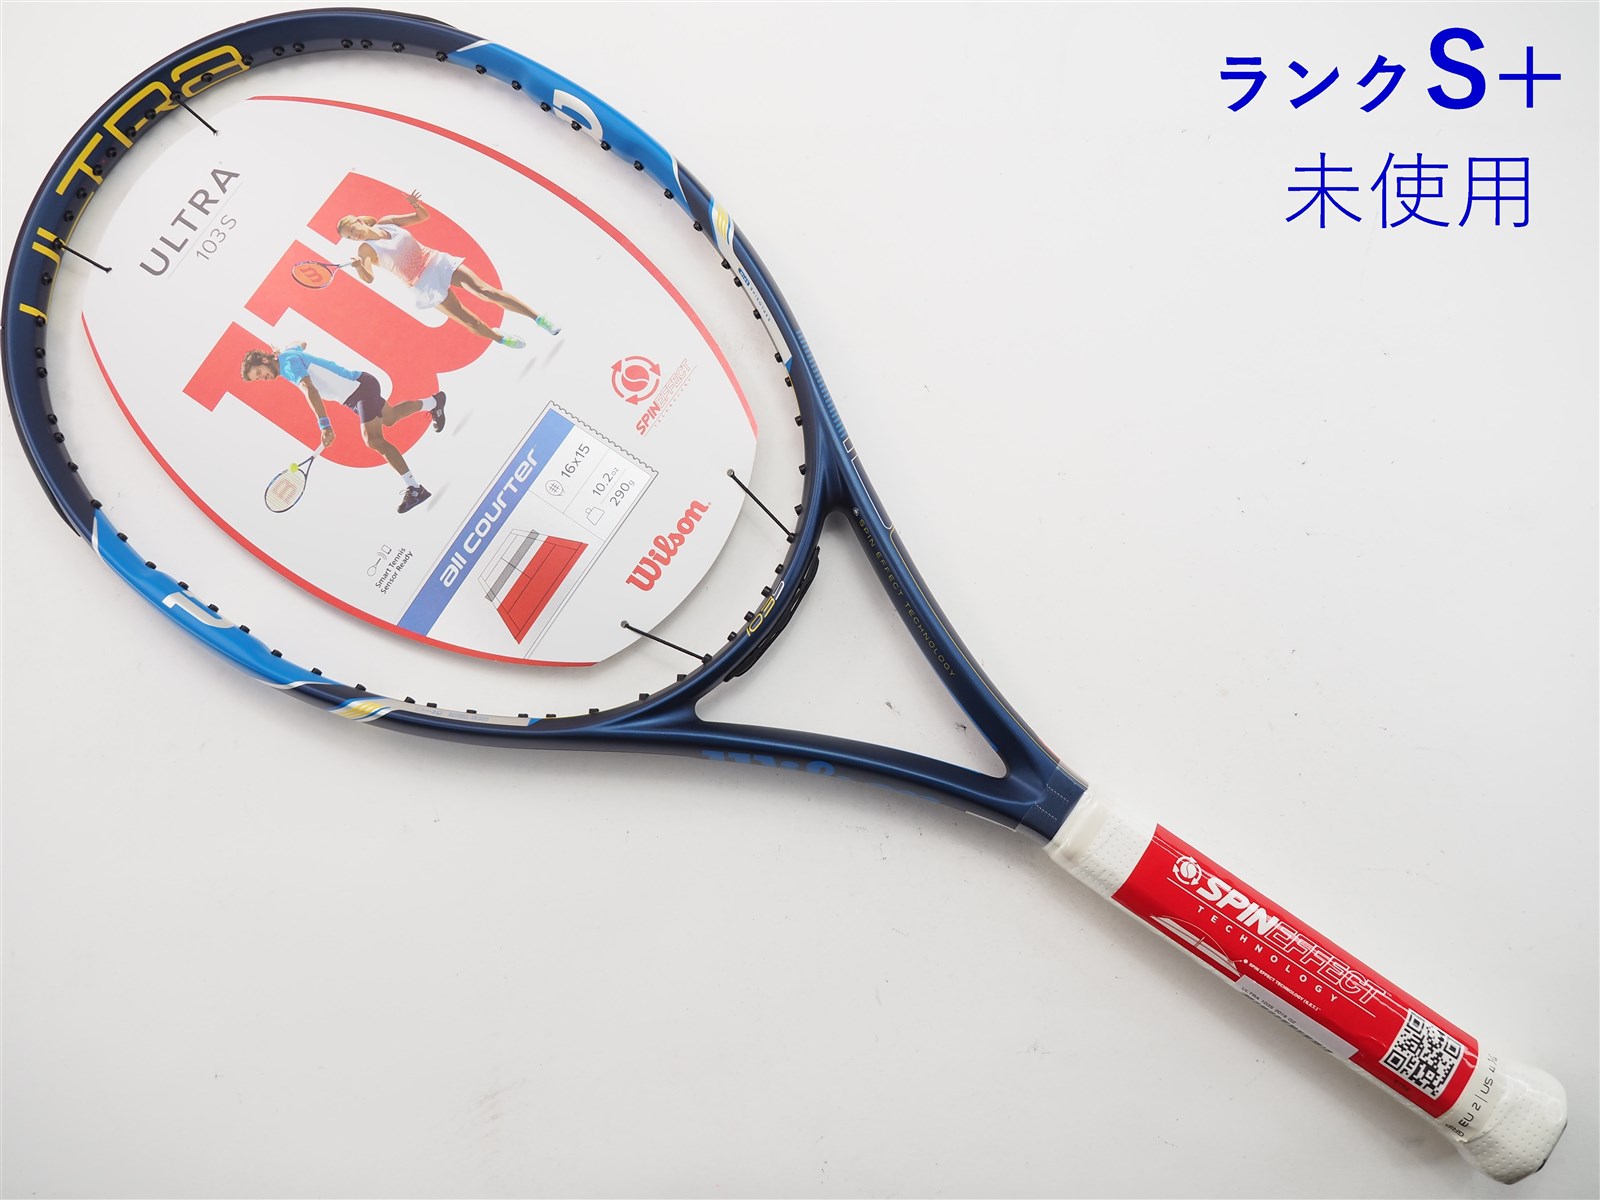 テニスラケット Wilson ultra 103s-